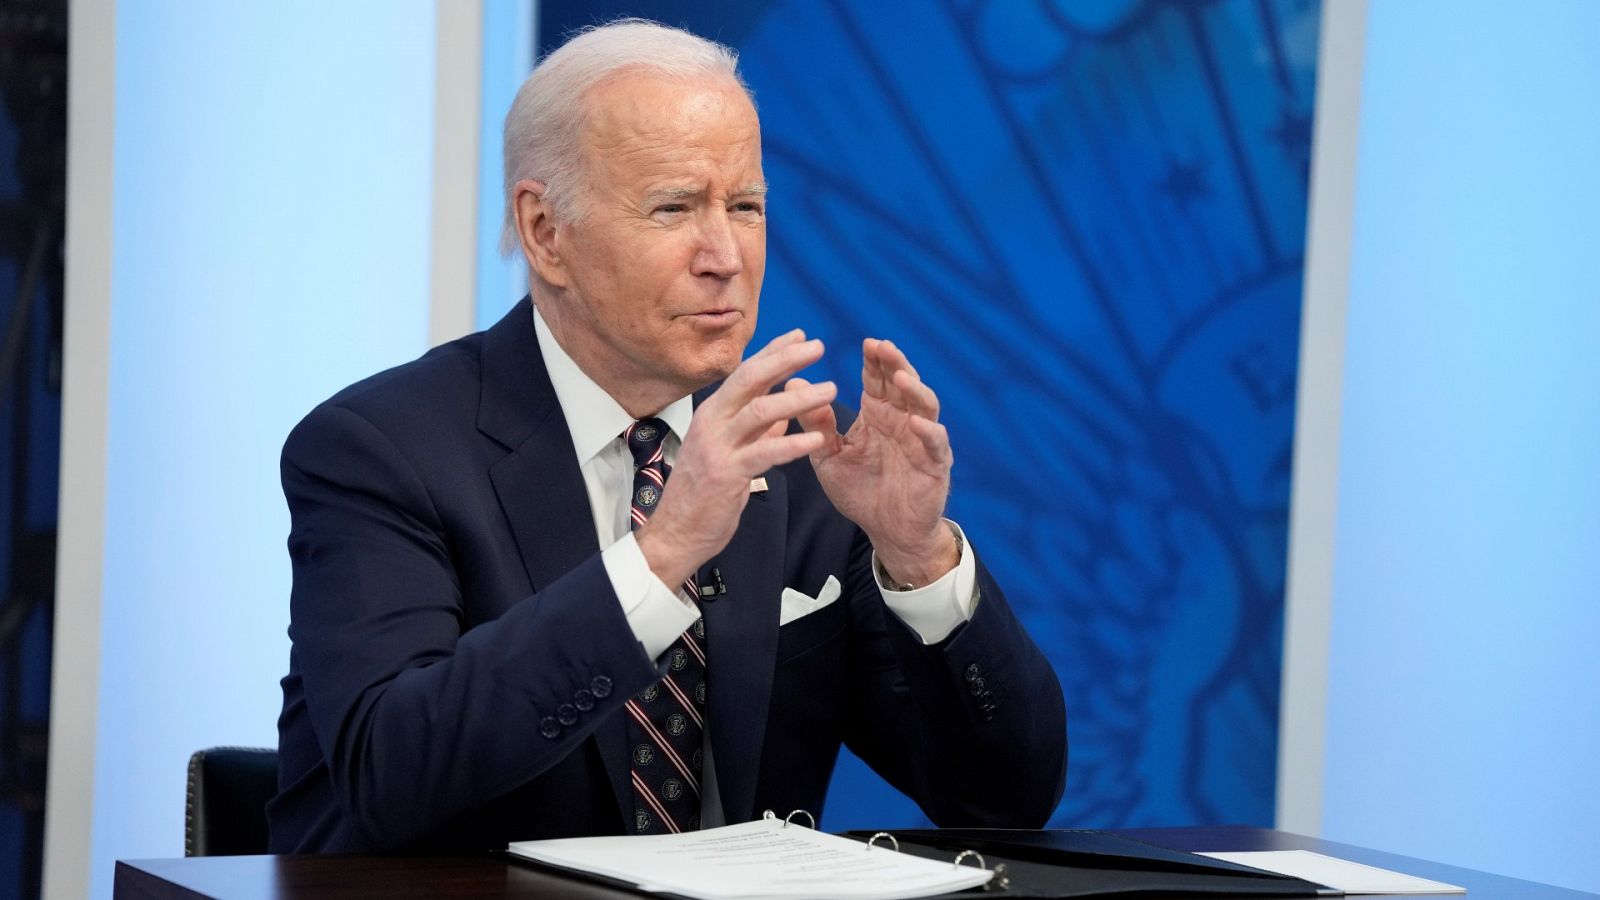 24 horas - Biden anuncia nuevas sanciones financieras a Rusia - Escuchar ahora